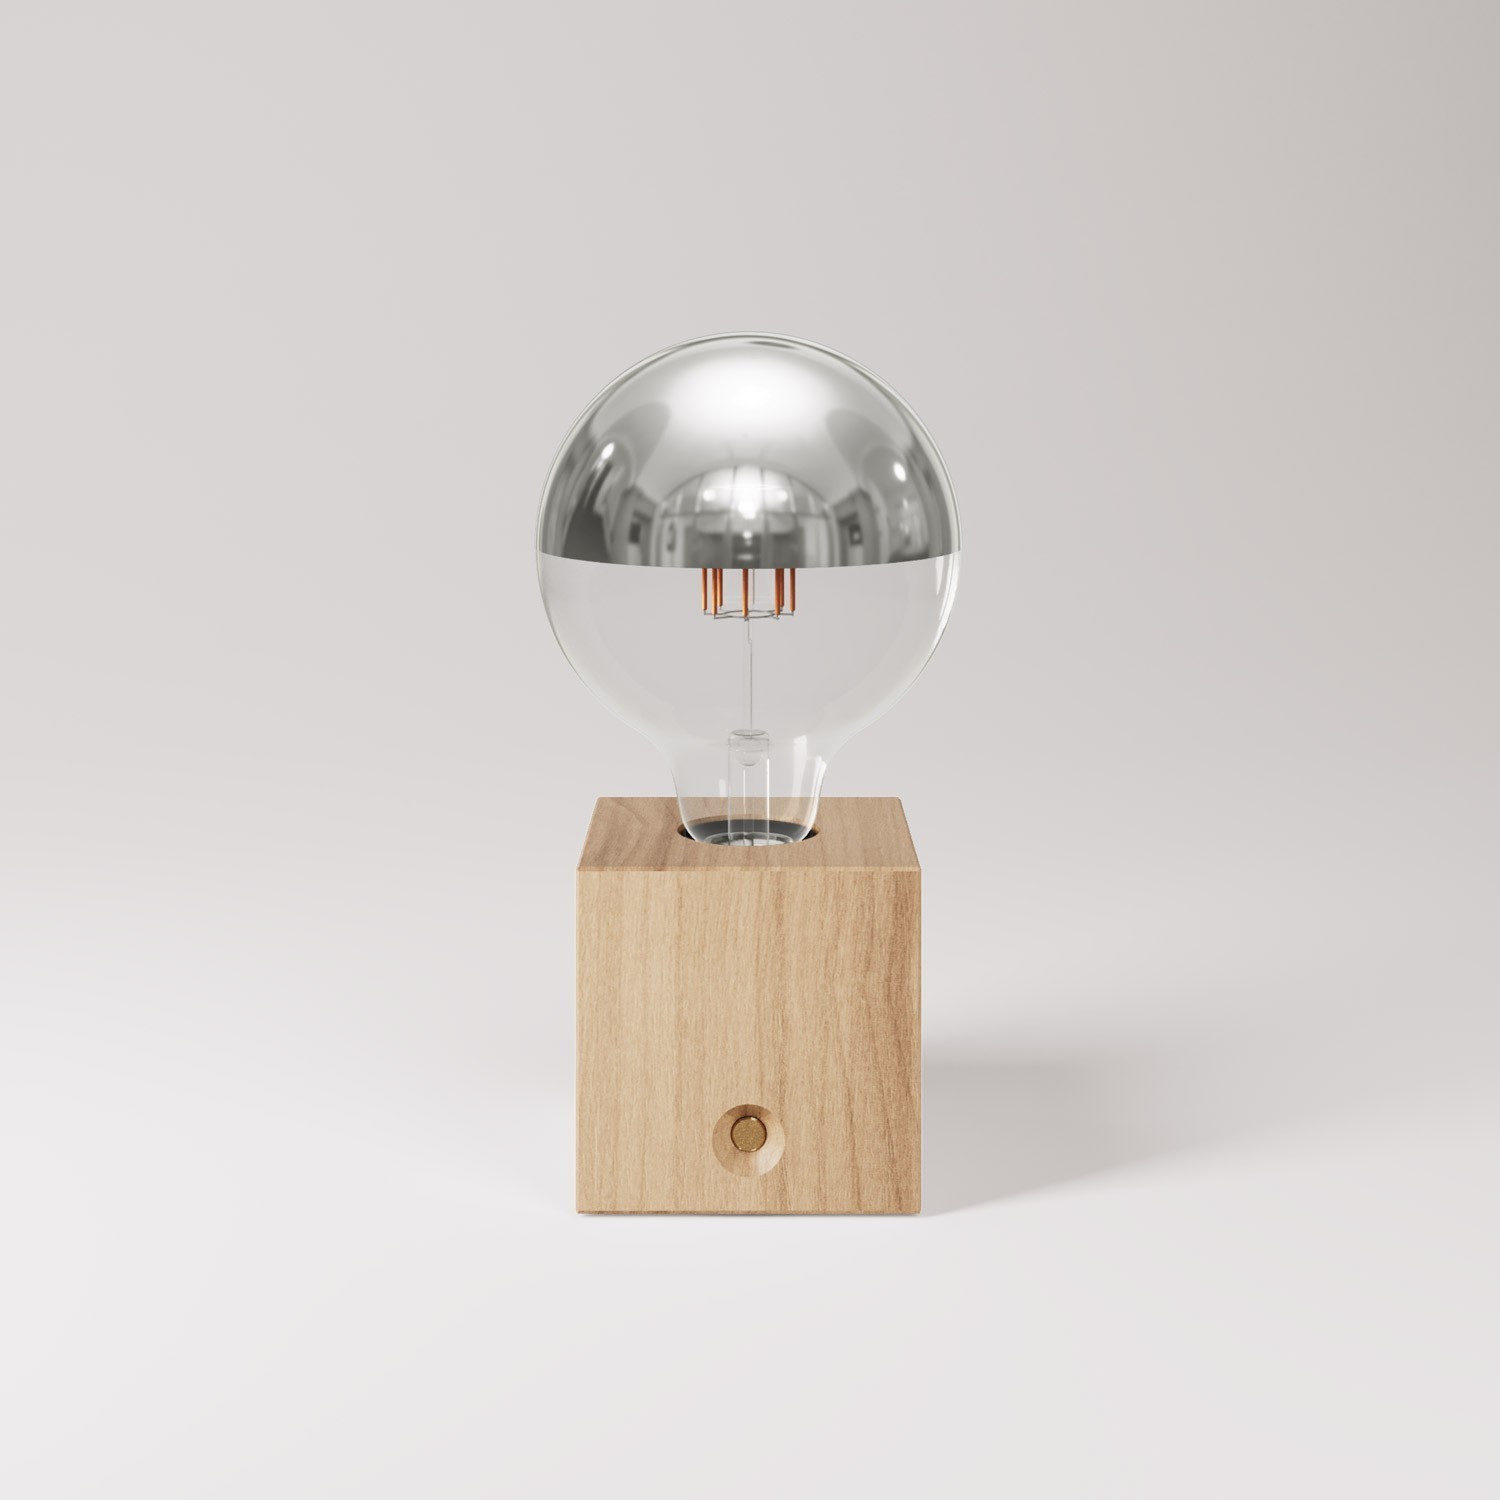 Lâmpada portátil recarregável Cabless03 com lâmpada globo metade da esfera prateada